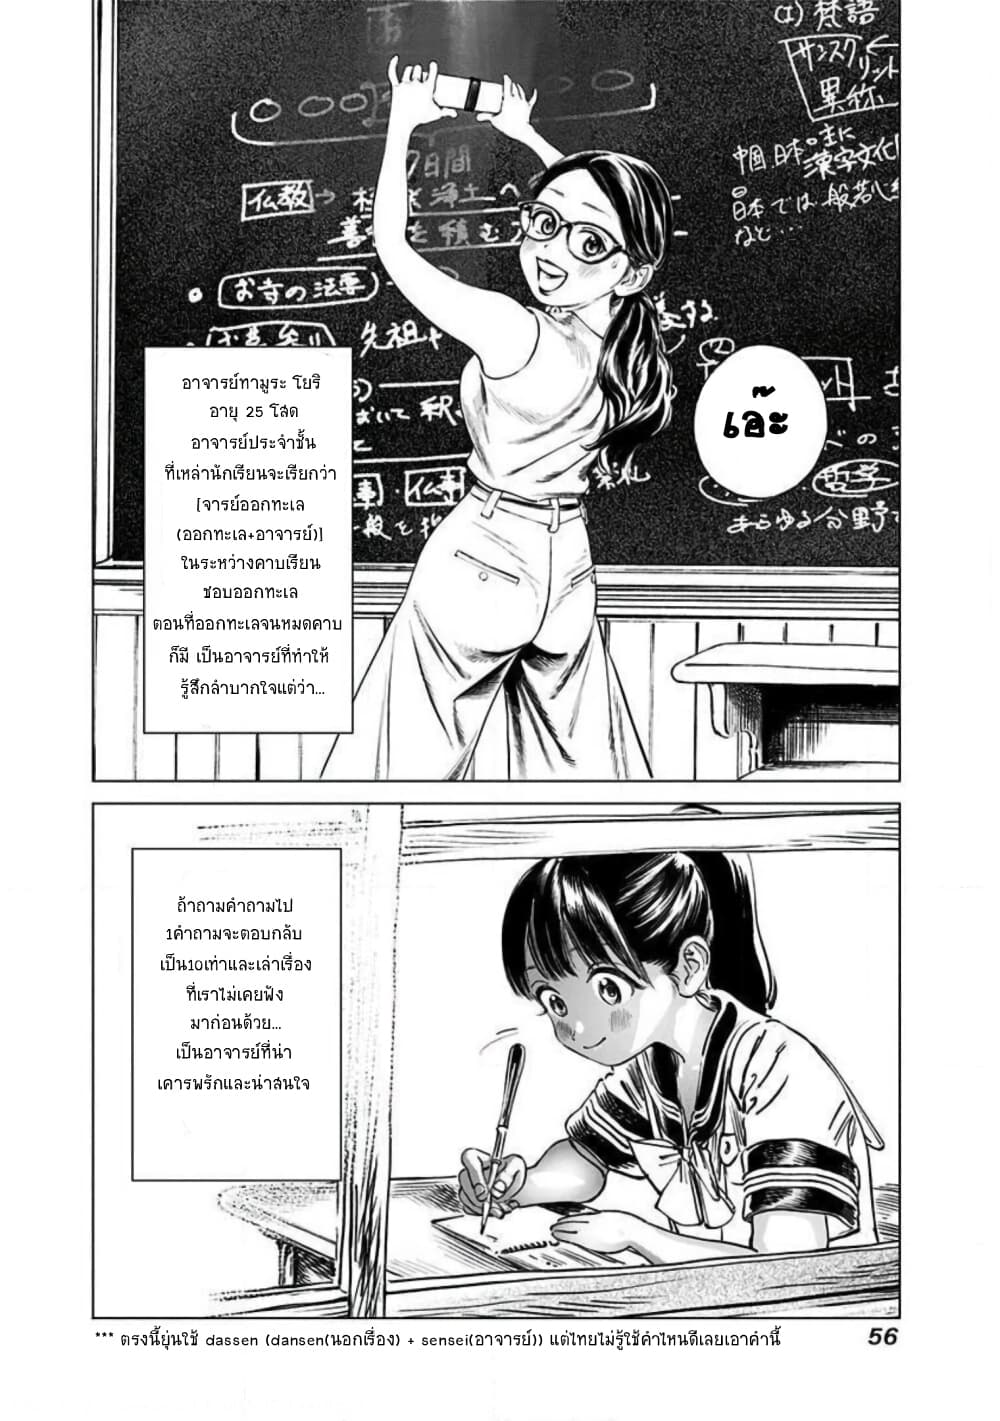 Akebi chan no Sailor Fuku 47 (19)